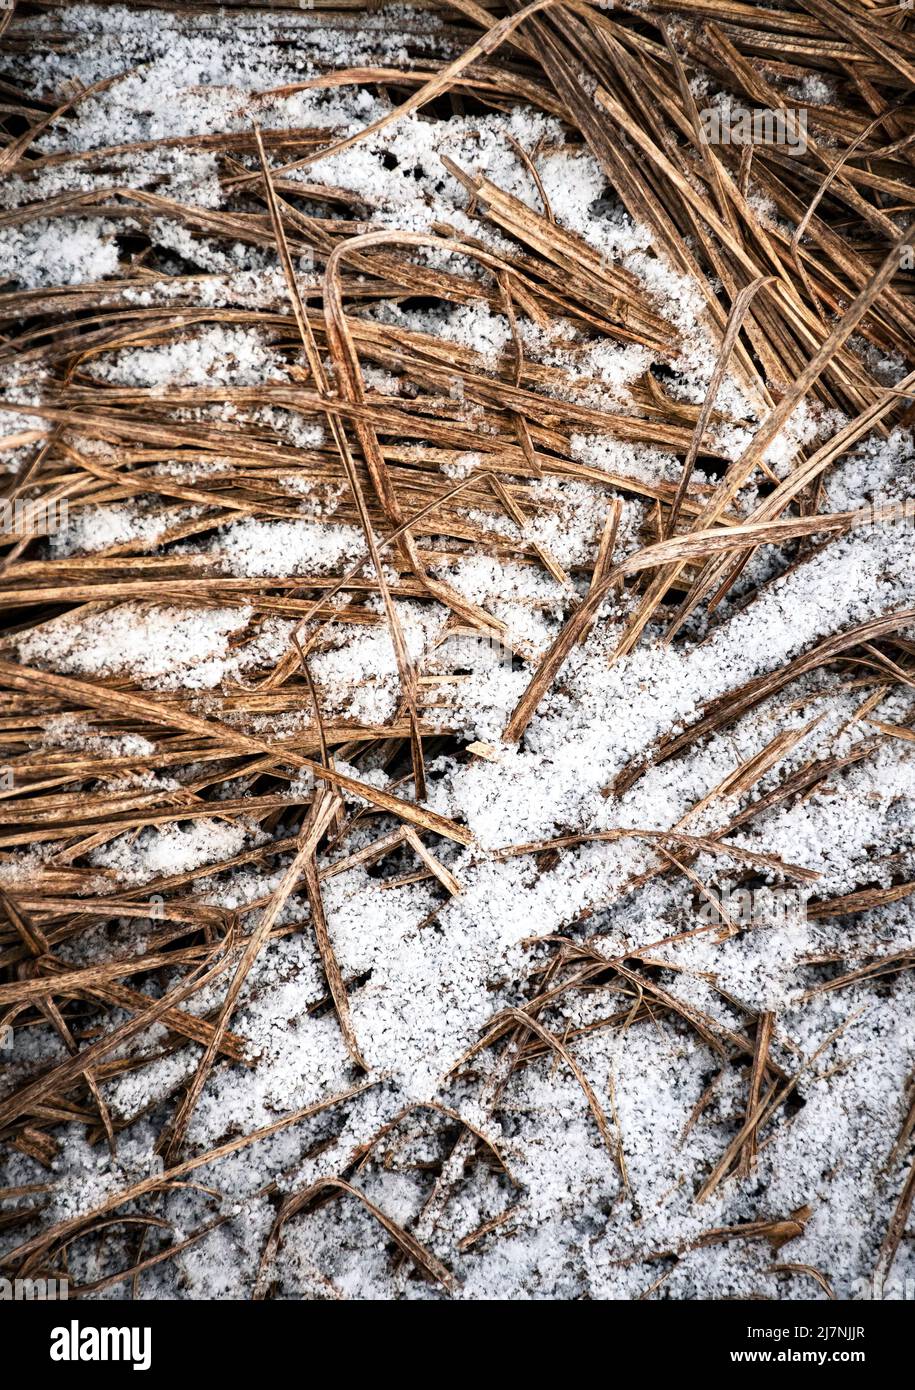 fond saisonnier herbe sèche arrosée de neige Banque D'Images